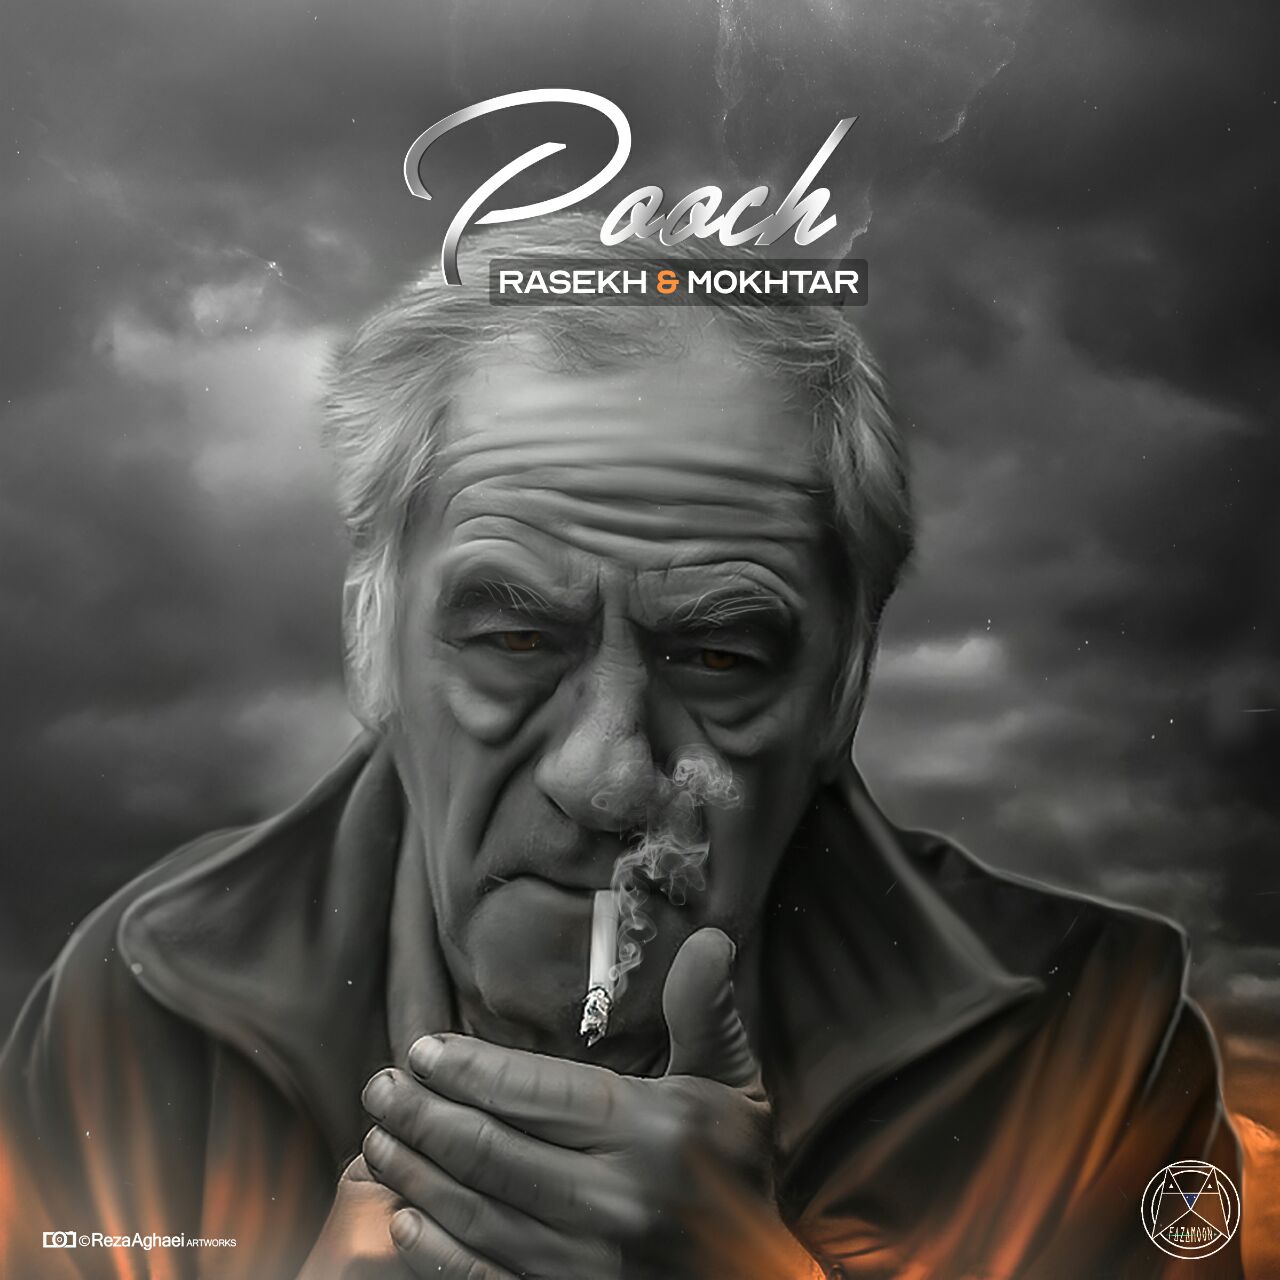 Rasekh ft. Mokhtar - Pooch